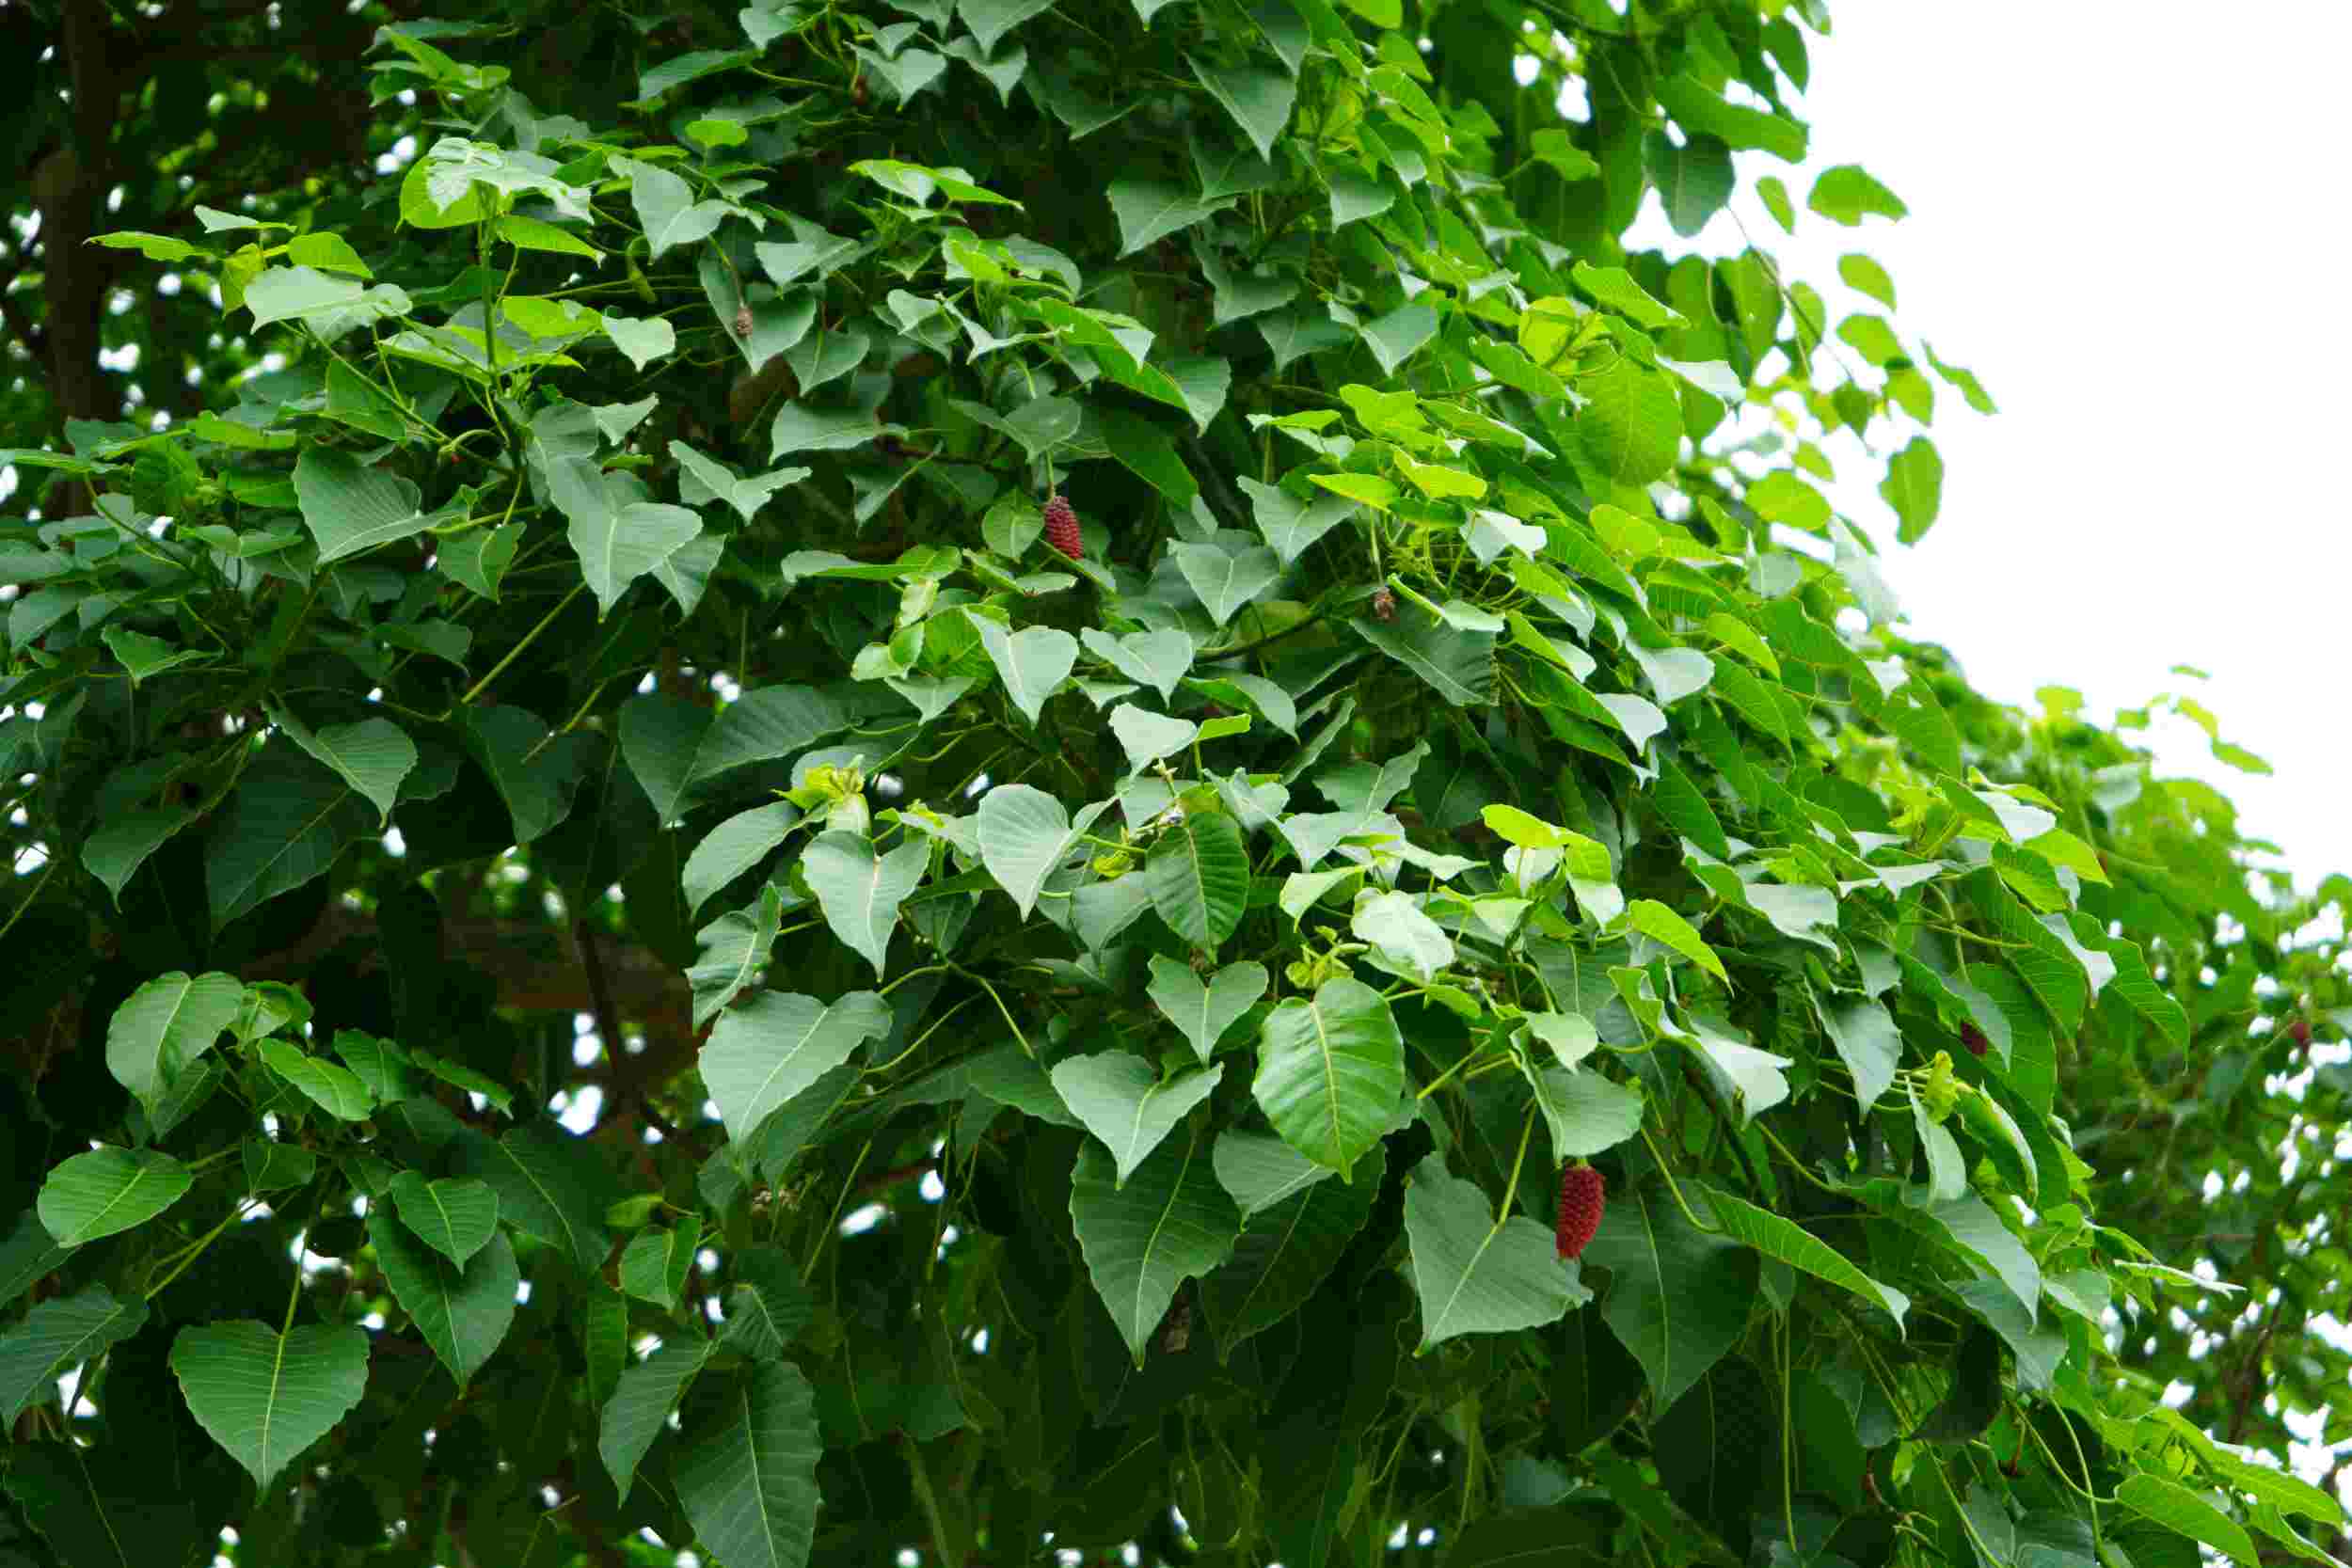 Lá cây xanh mướt có dạng hình tim, hoa màu đỏ thường nở vào mùa hè. Tán cây tỏa bóng mát che cho cổng đình Vũ Xá và sân sinh hoạt chung của người dân địa phương. 